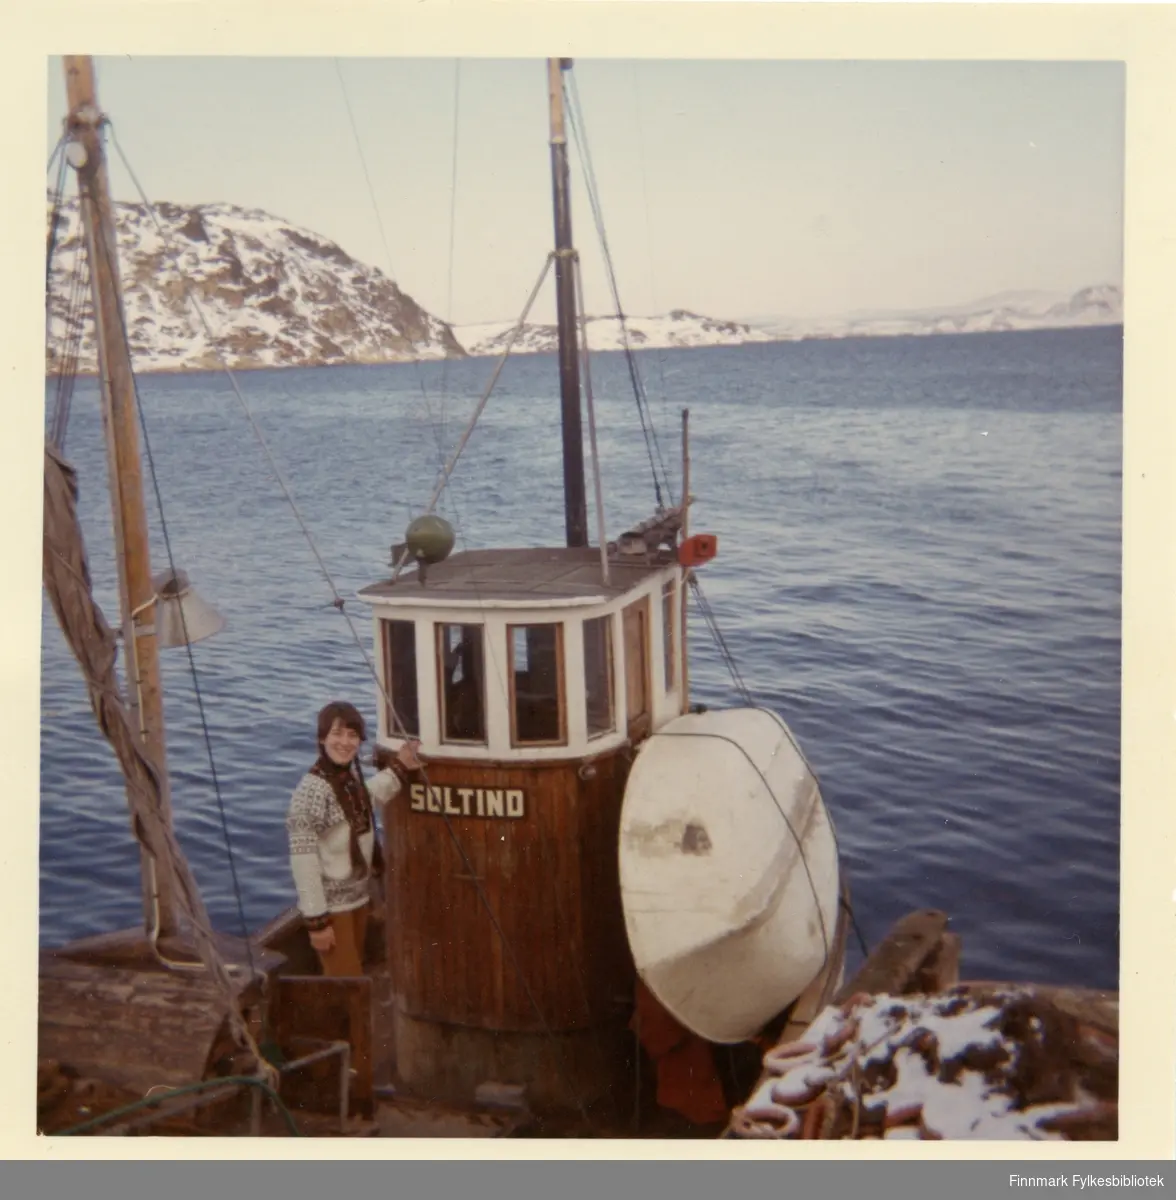 Inger Marie ombord på "Soltind". Dette er familien Olsens fiskebåt. Familiefar Albert døde sommeren 1966, bare 49 år gammel. Og etterpå var det sønnen Bjørnar som driftet båten.